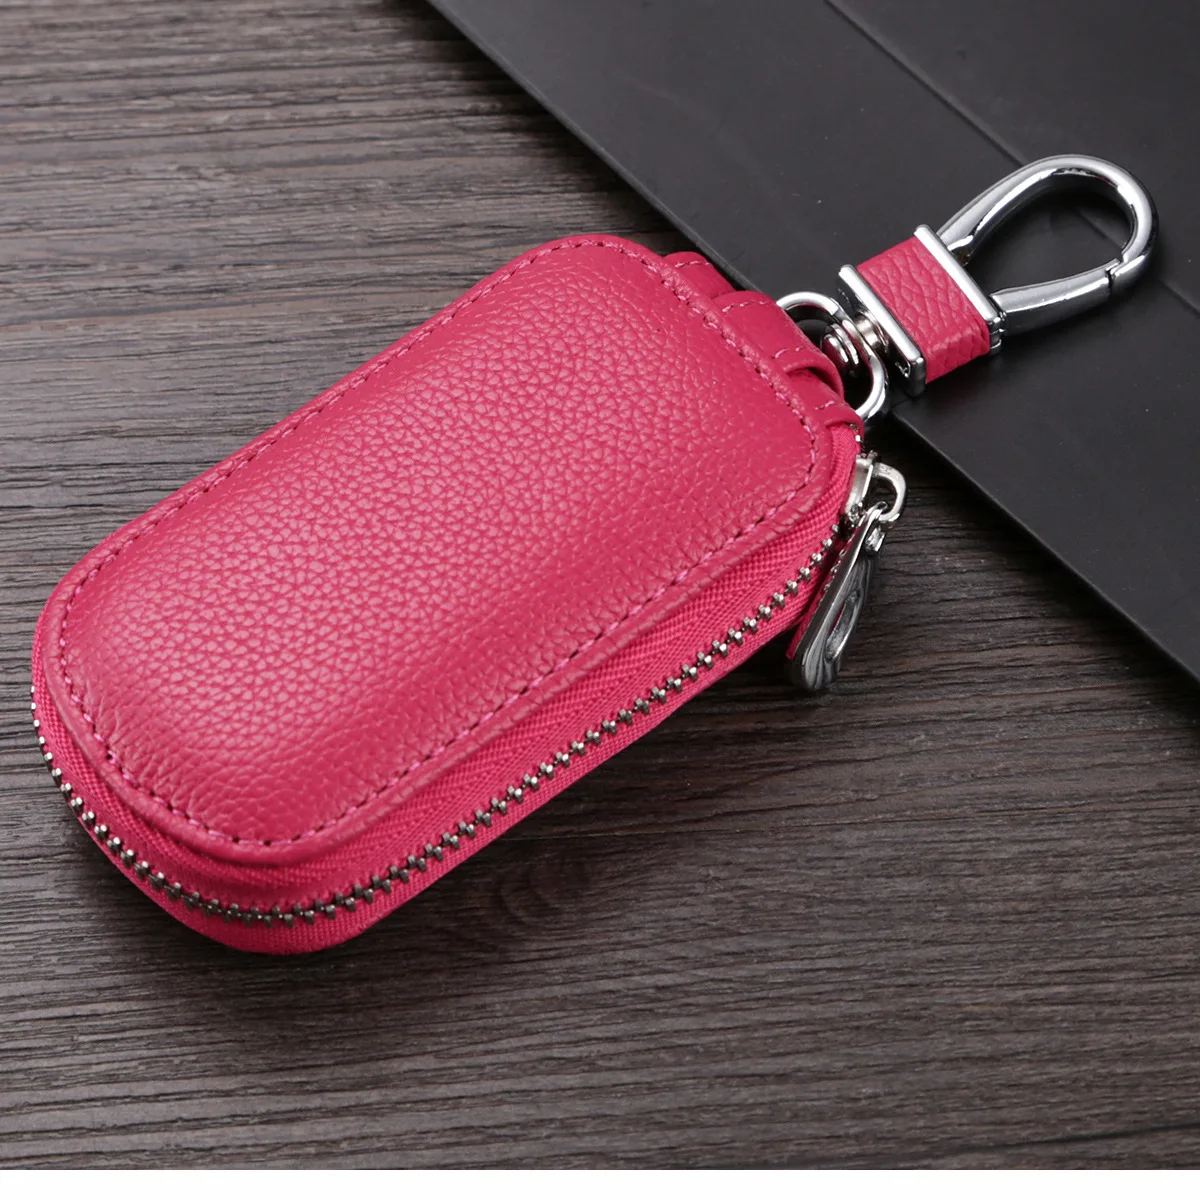 ETya натуральная кожаный брелок для ключей, брелок для ключей для мужчин Организатор ключей экономки Для женщин брелок чехлы кейс на молнии сумка - Цвет: Hot pink